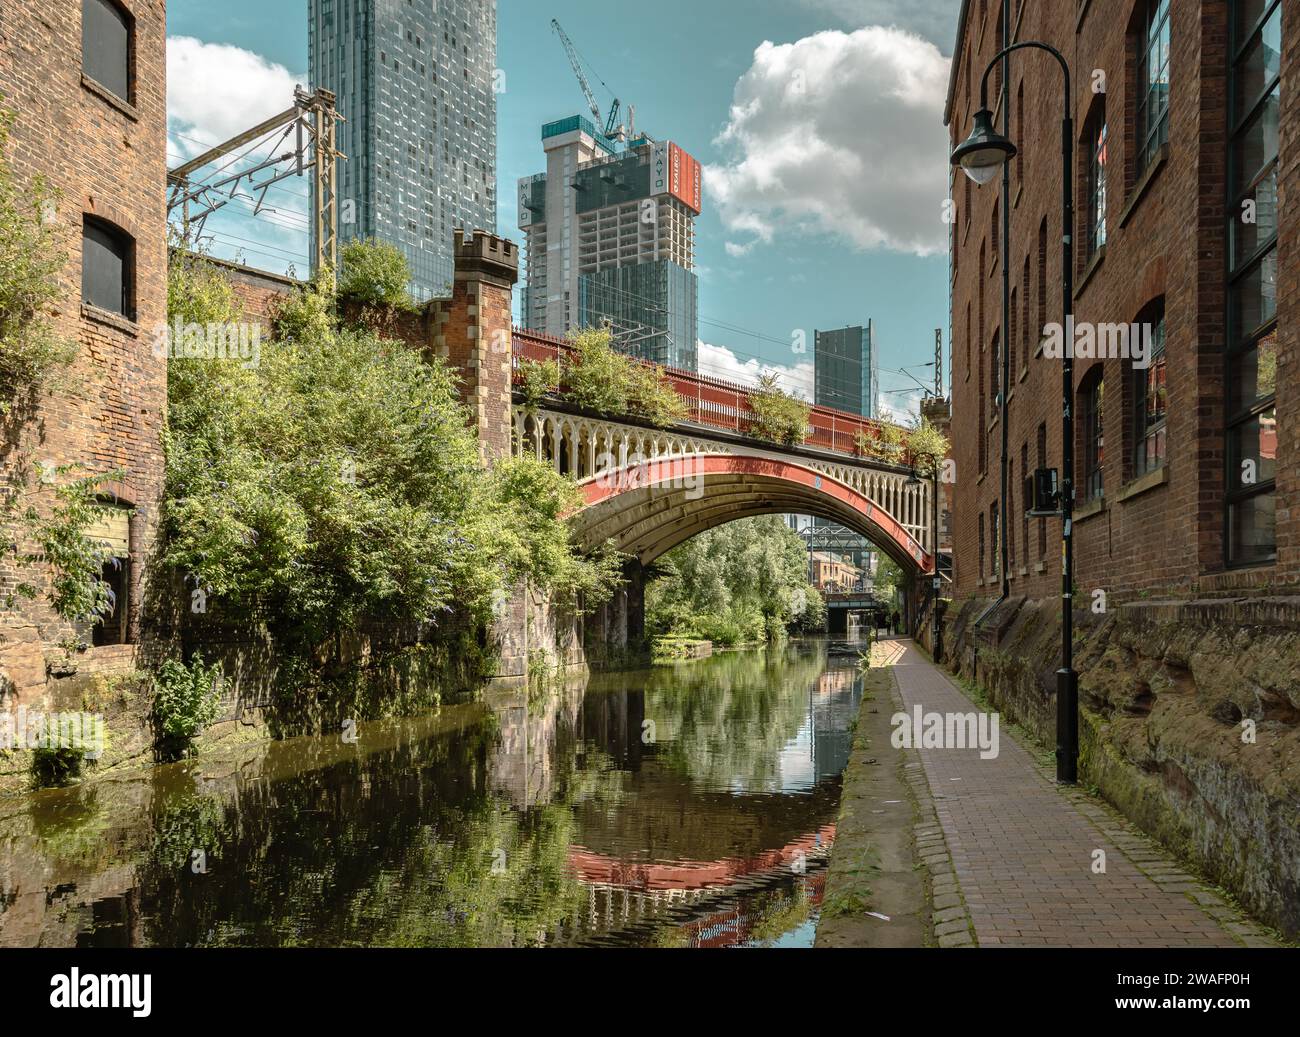 Un ponte vittoriano riflesso nel canale di Rochdale. Dietro di esso, si innalzano i grattacieli contemporanei che mostrano l'evoluzione della città di Manchester. Foto Stock